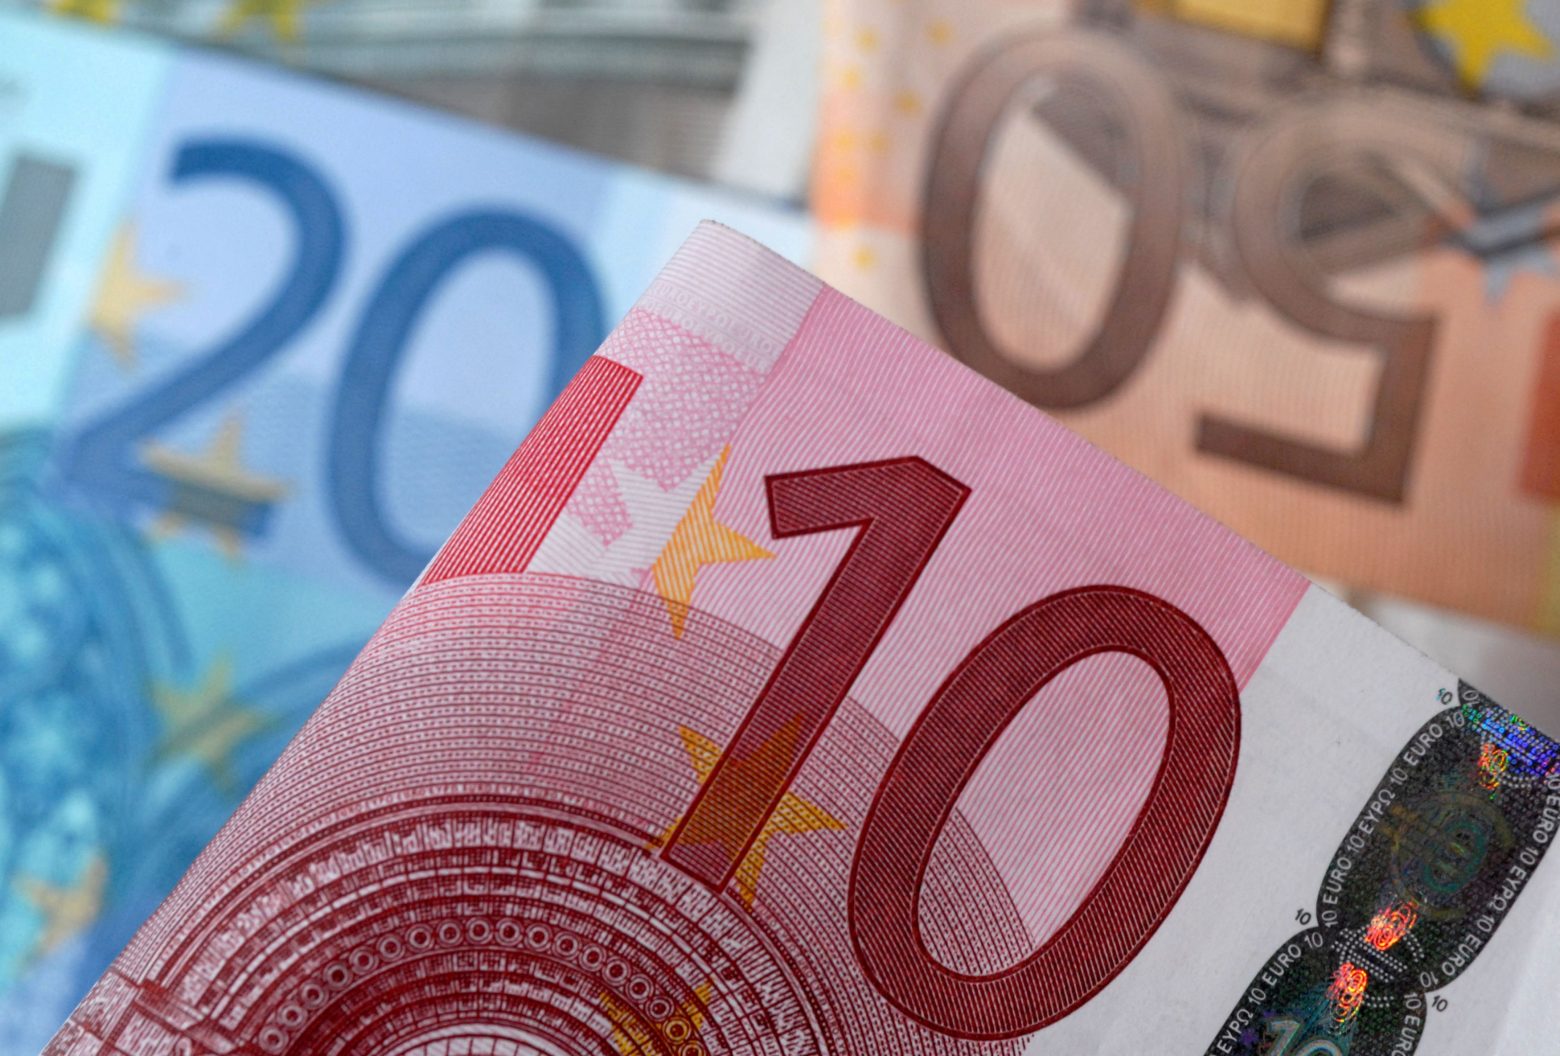 Ευρωζώνη: Με την ένταξη της Κροατίας «ολοκληρώθηκε» η ζώνη του ευρώ;